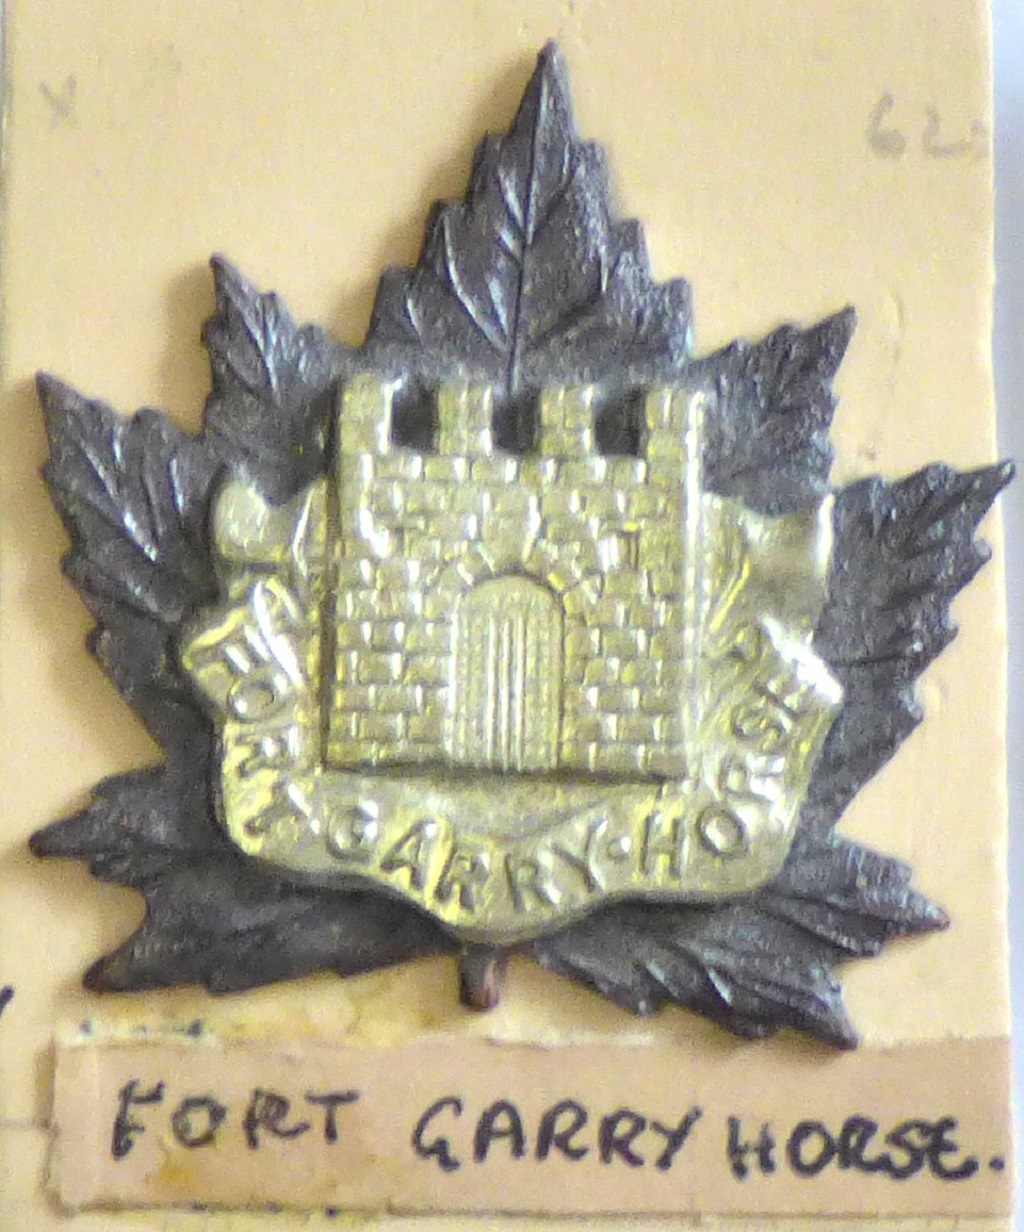 Canada - Fort Garry Horse Canada - Fort Garry Horse - w/m on bronze-Gaunt - w/m on bronze-Gaunt